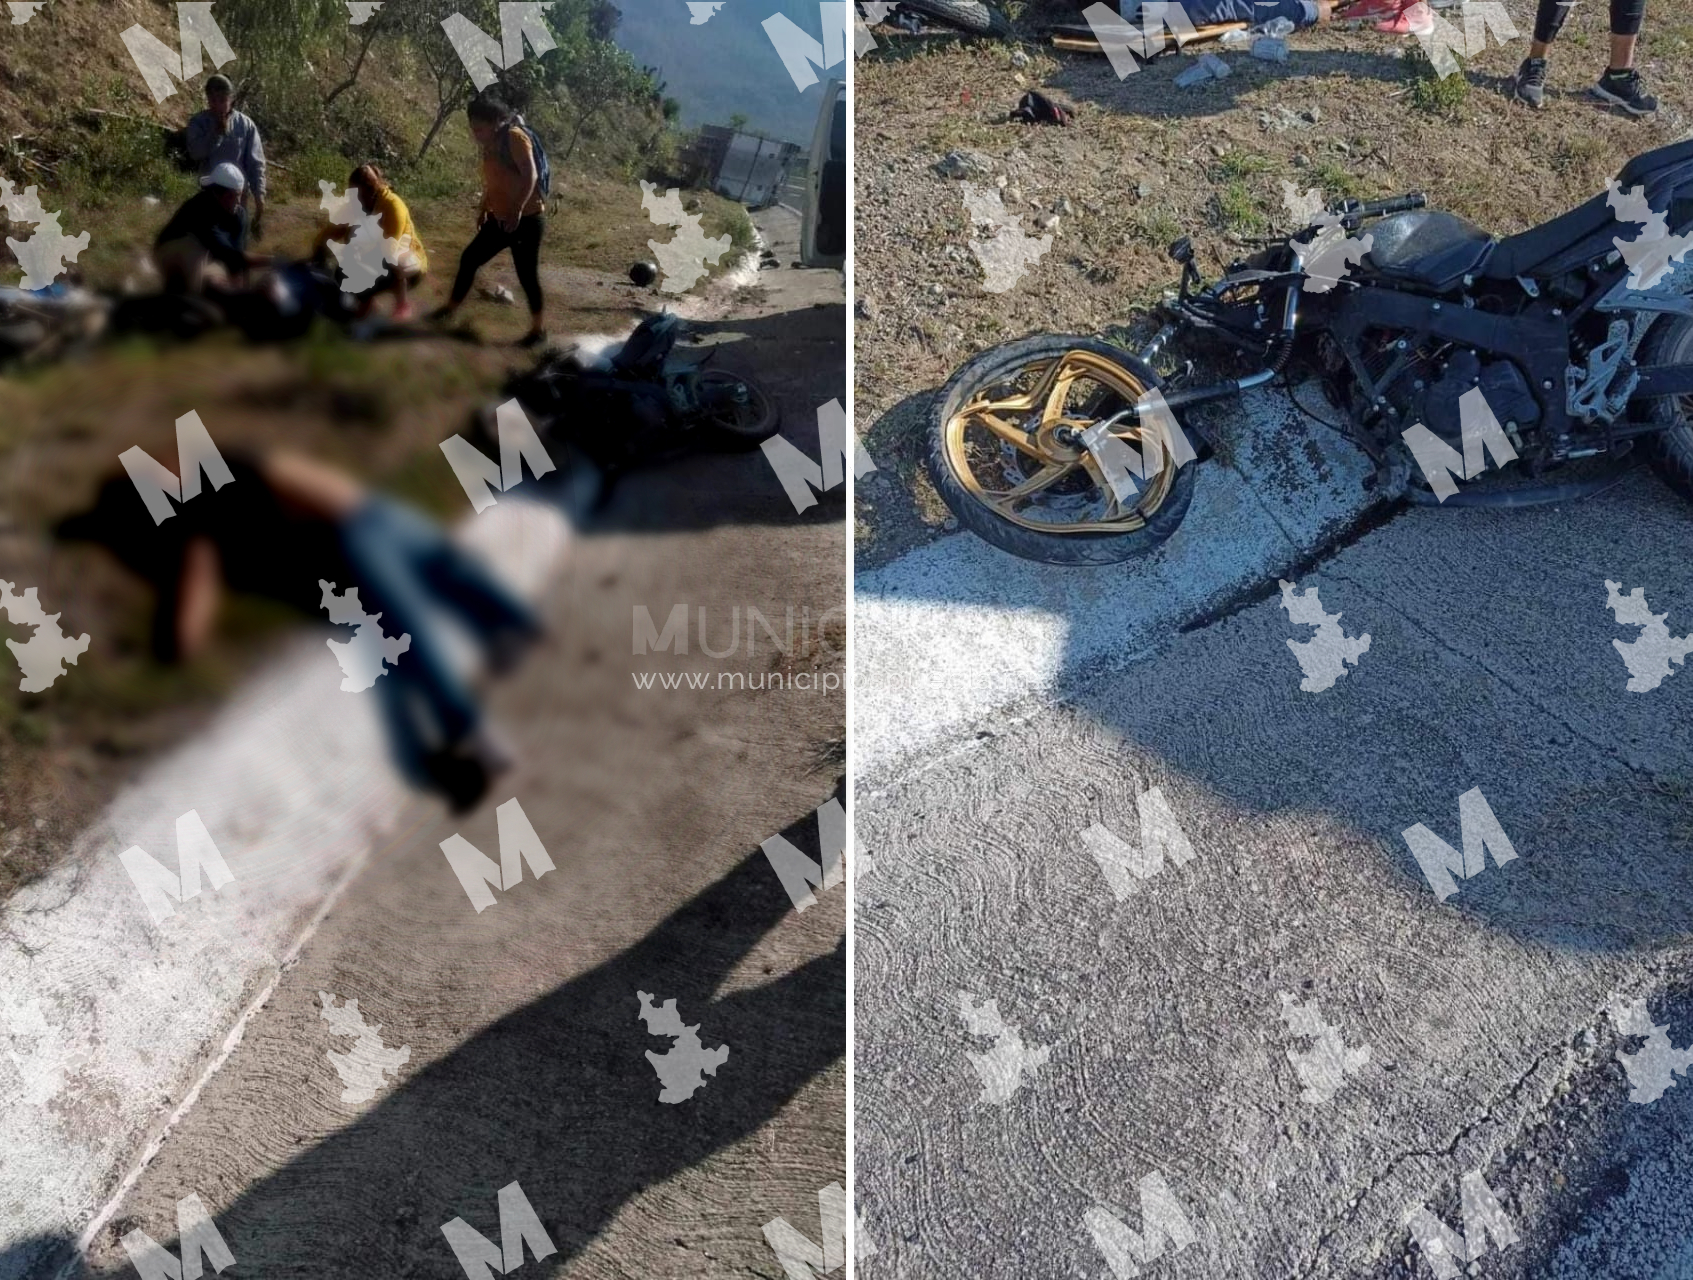 Embisten a motociclistas y uno muere en Tehuacán